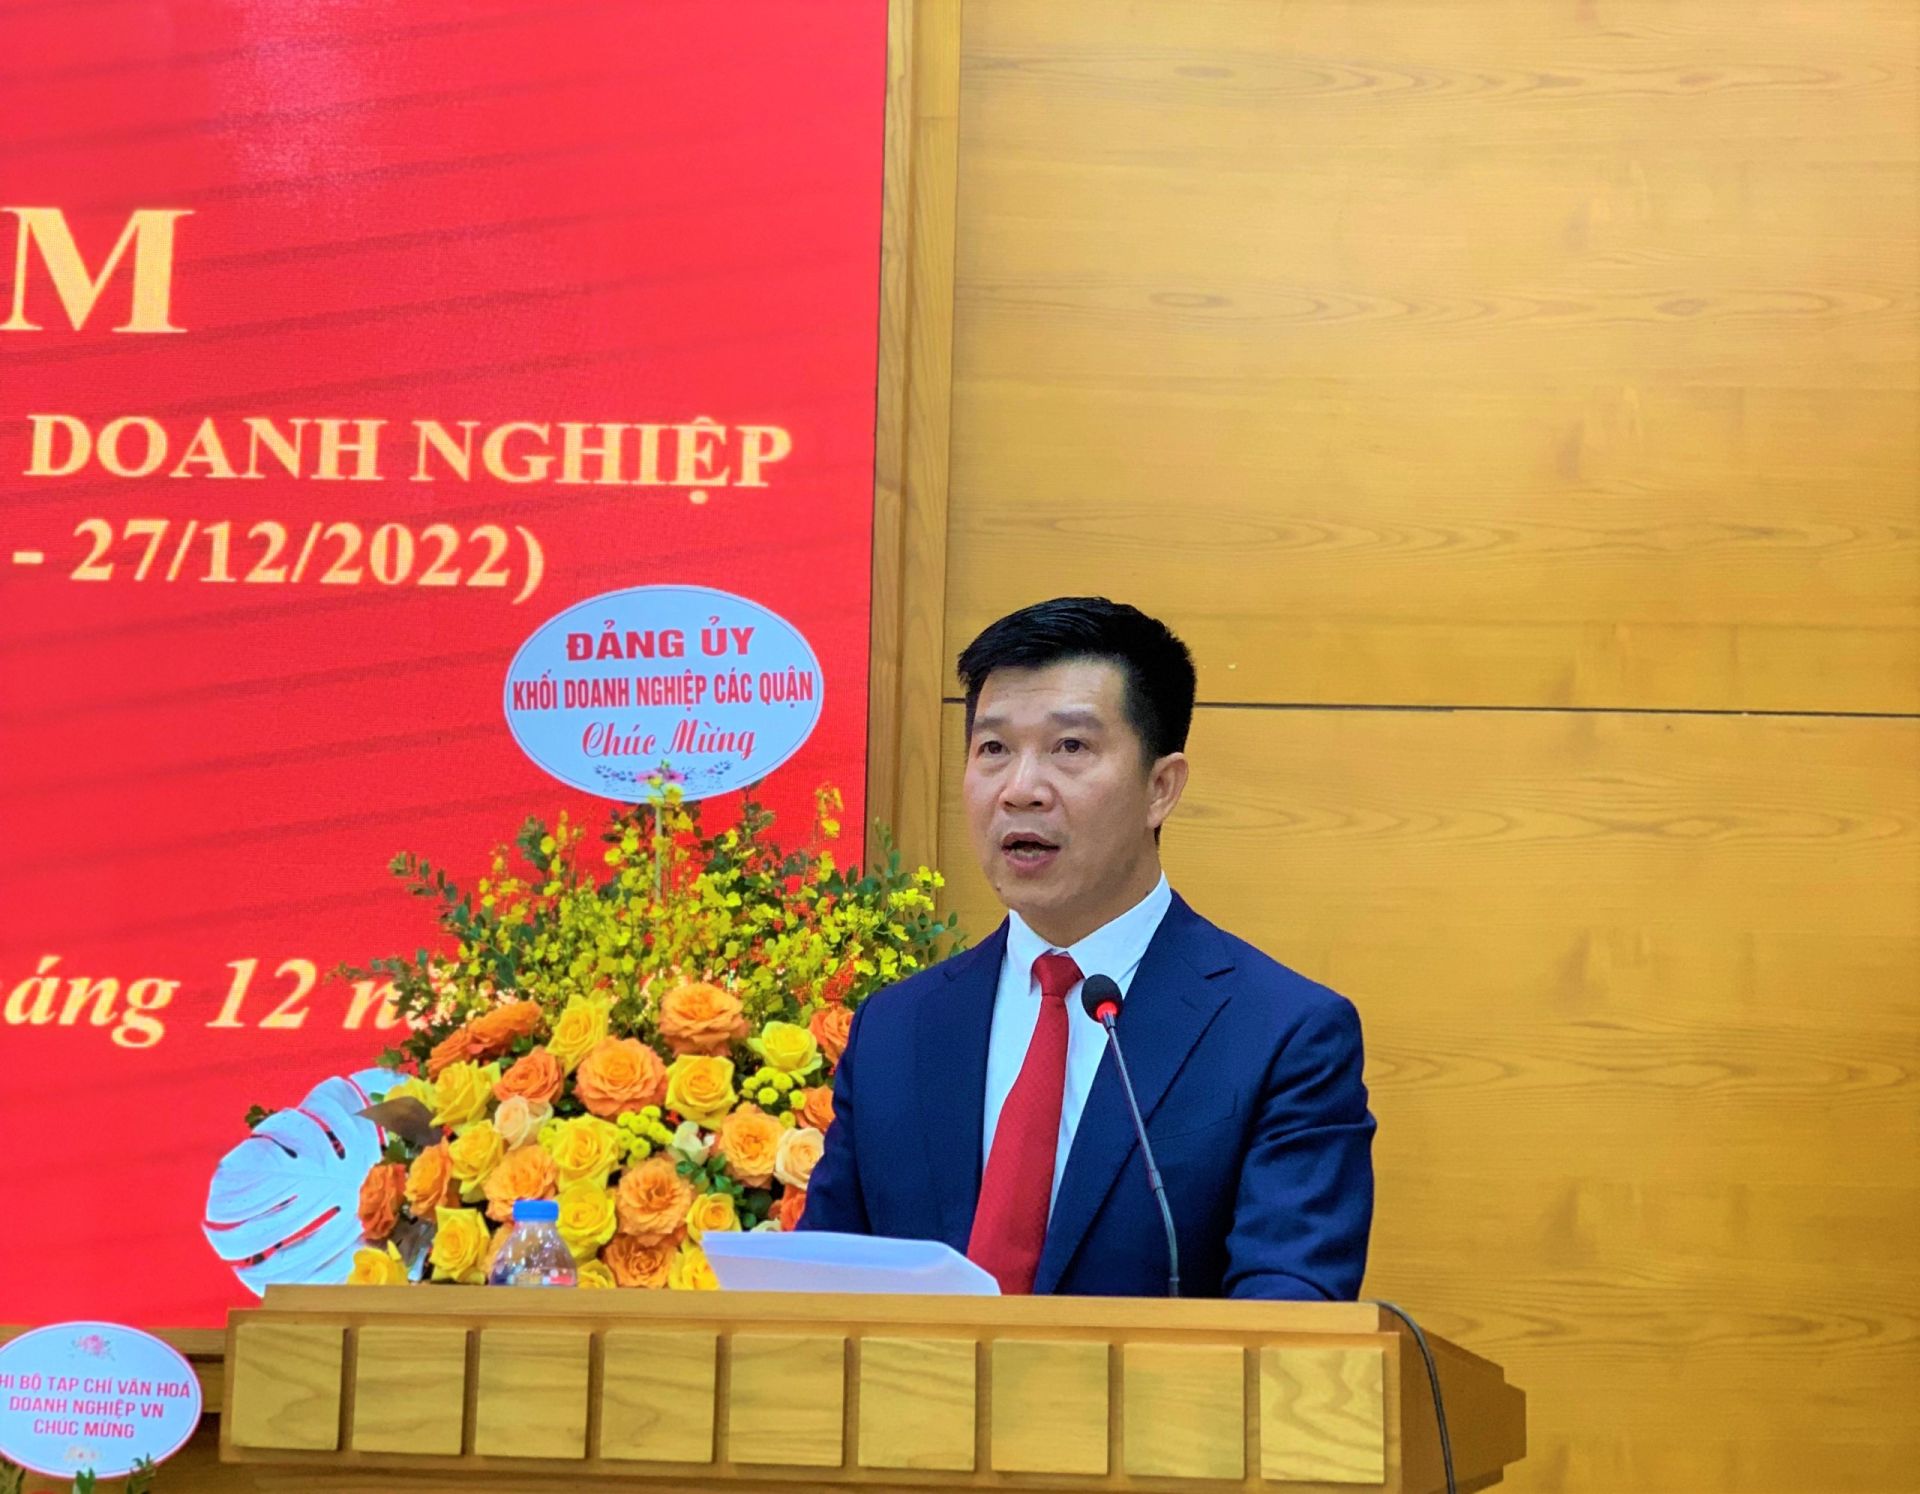 ông Nguyễn Văn Minh – Quận ủy viên – Bí thư Đảng ủy  Khối Doanh nghiệp quận Thanh Xuân